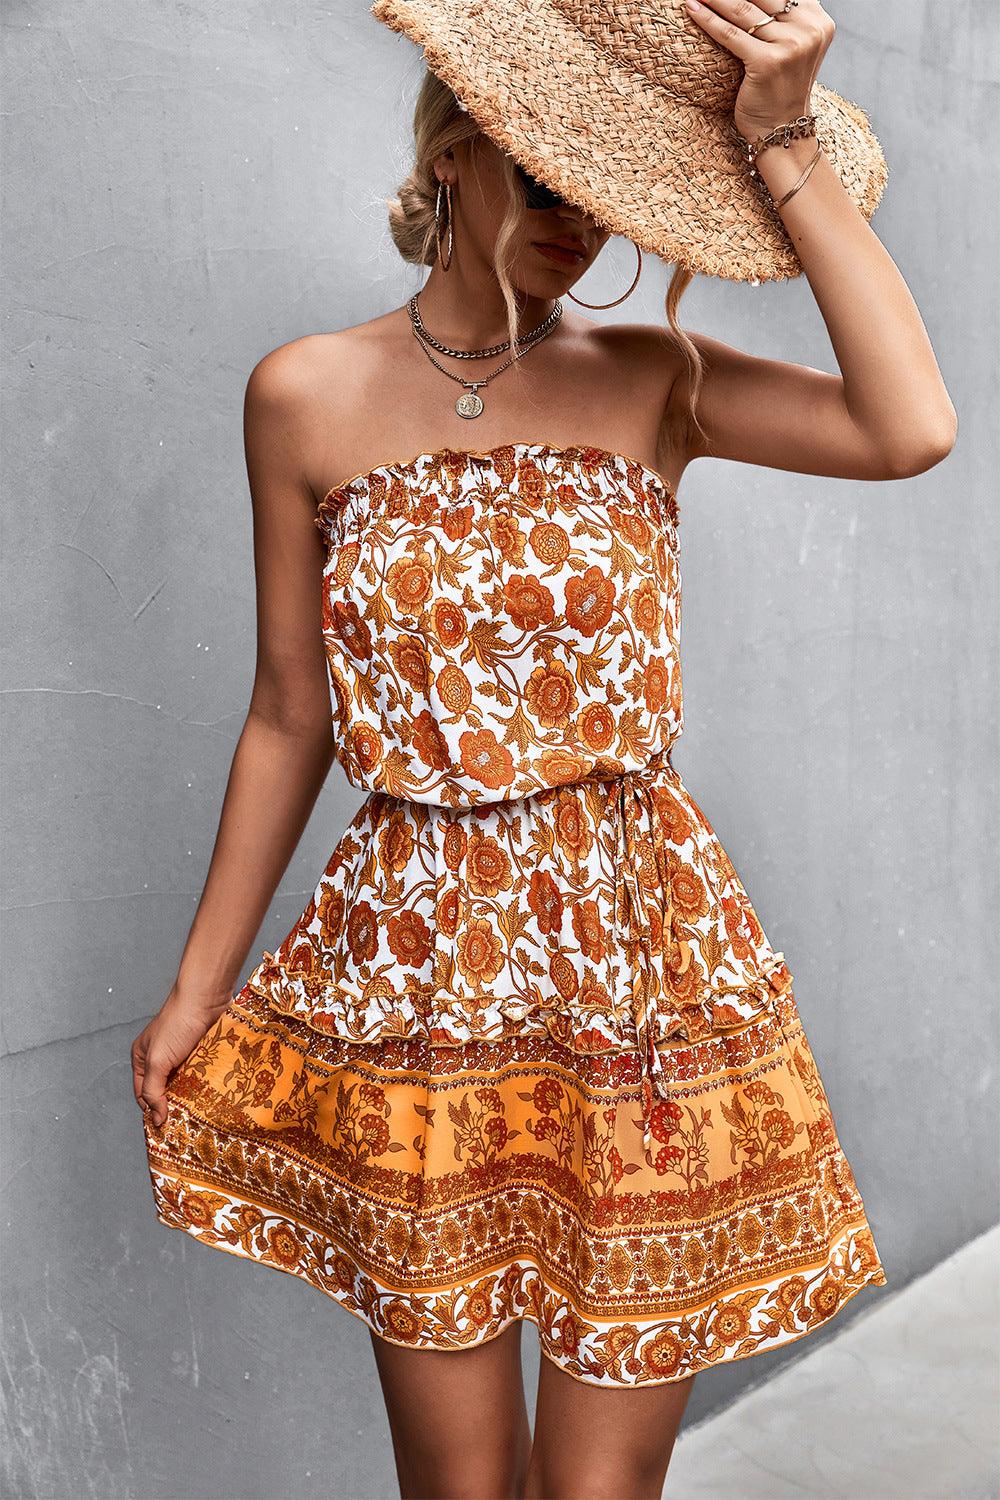 Lovemi -  Women's Bohemian Floral Print Strapless Dress Summer Beach Dress